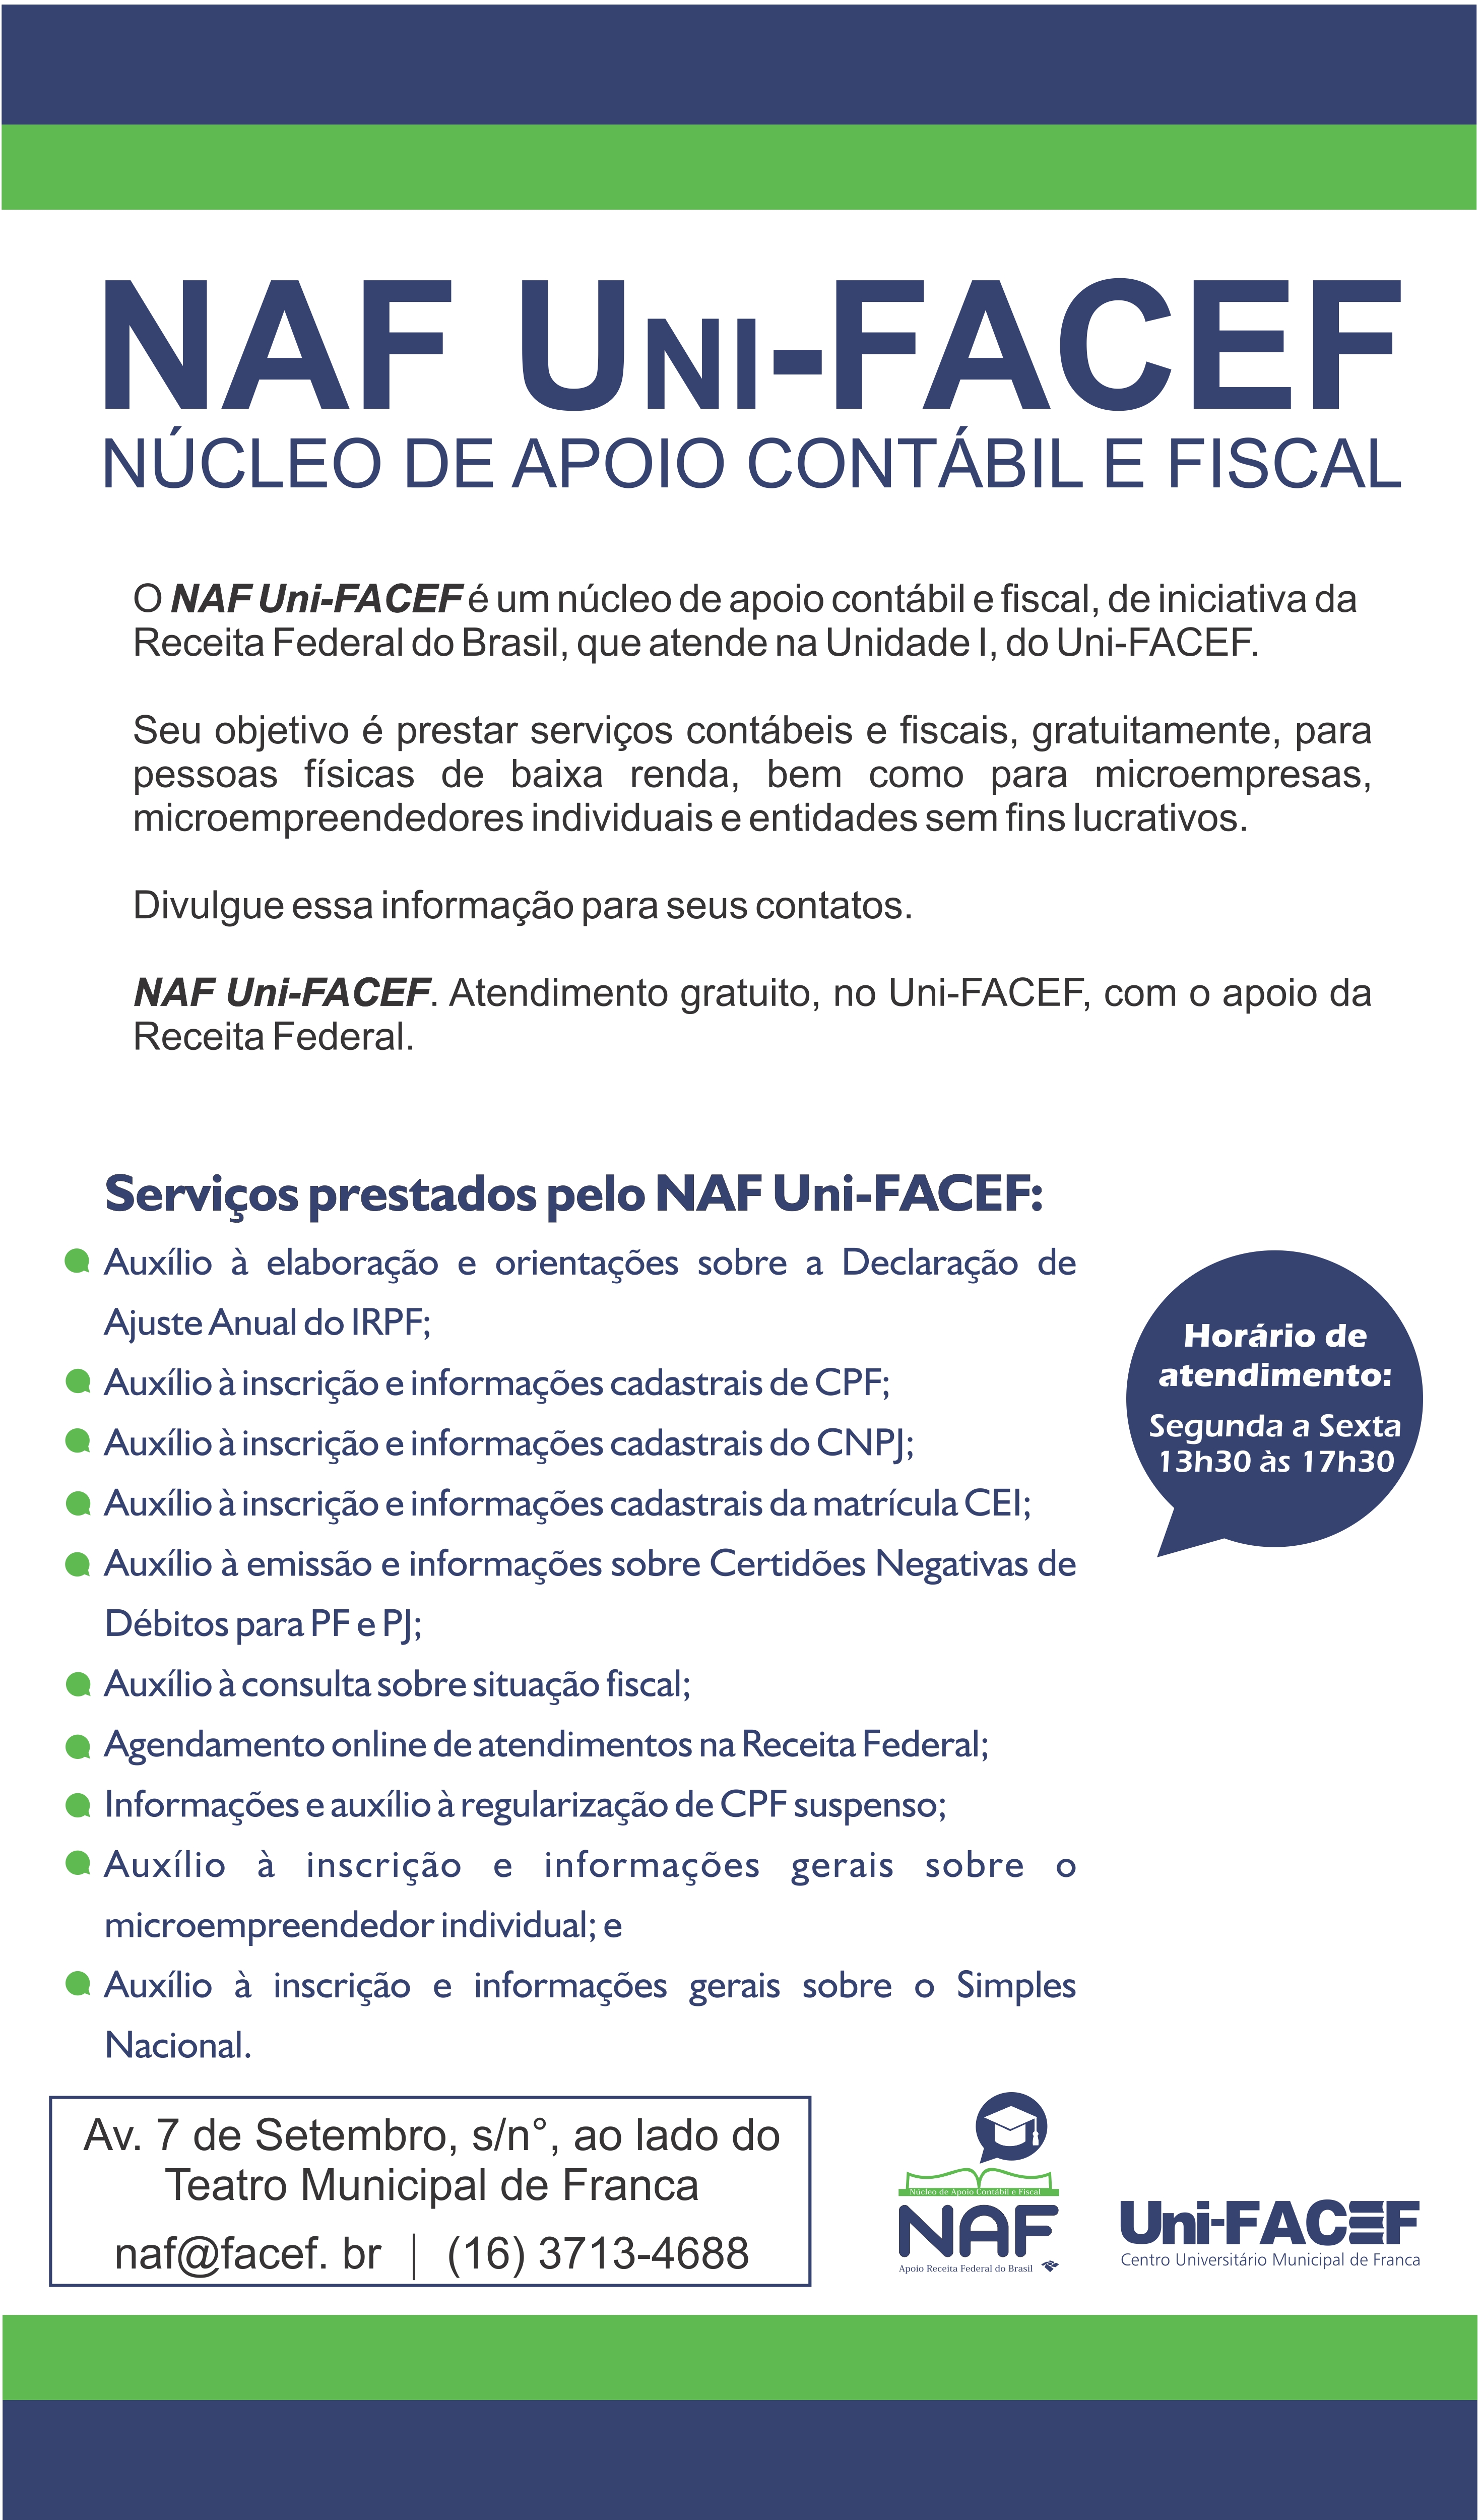 NAF (Núcleo de Apoio Fiscal do Uni-FACEF) atende pessoas físicas e jurídicas, com apoio da Receita Federal